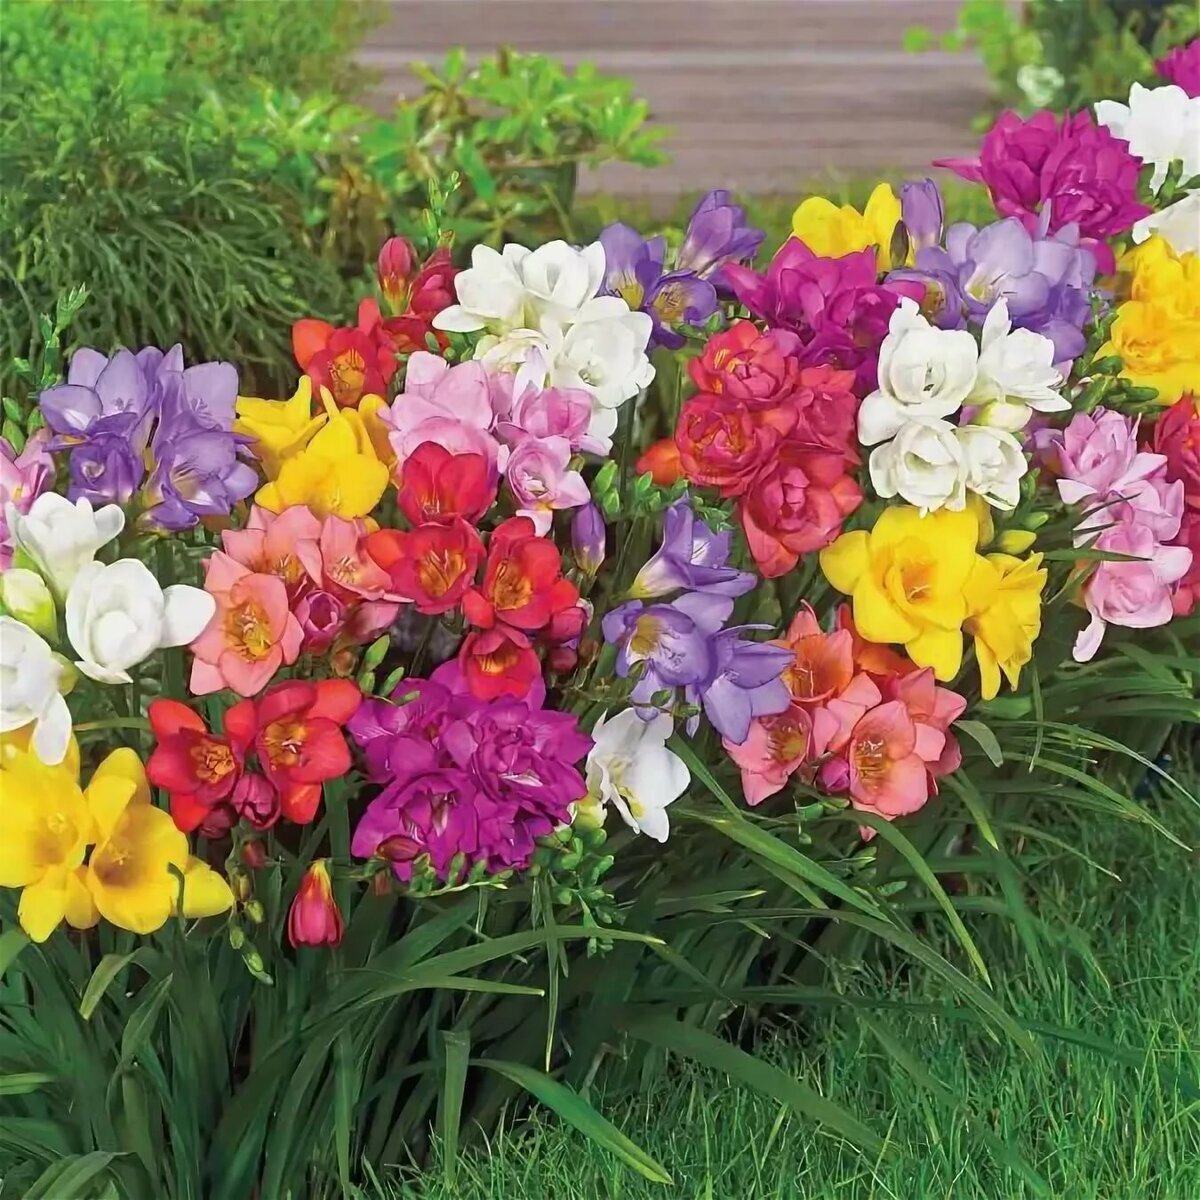 ФРЕЗИЯ — это многолетнее растение семейства ирисовых. Это один из самых красивых и ароматных цветов, который используется в качестве декоративного растения в садах и оранжереях.-1-3